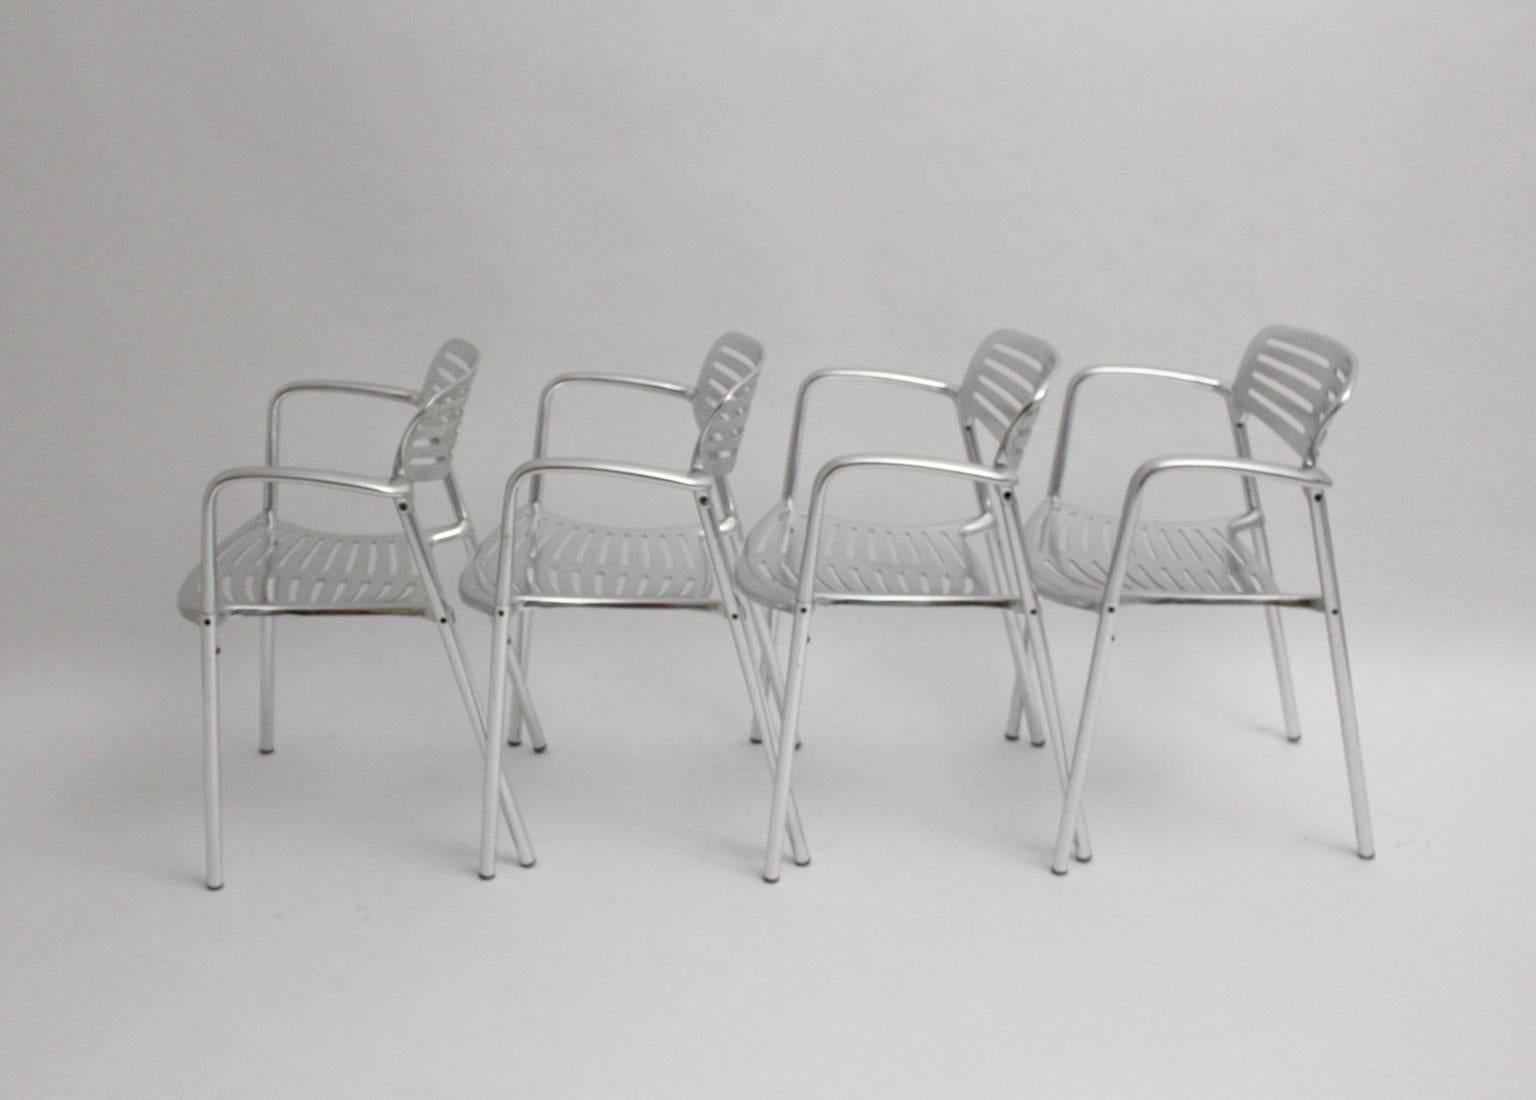 Modernes Set von 4 Stühlen oder Gartenstühlen oder Esszimmerstühlen aus Aluminium von Jorge Pensi 1986-1988, Spanien.
Der Name Toledo stammt von einer Festung, die uneinnehmbar war. 
Produziert von Amat 3
Diese Stühle sind sowohl für den Innen- als